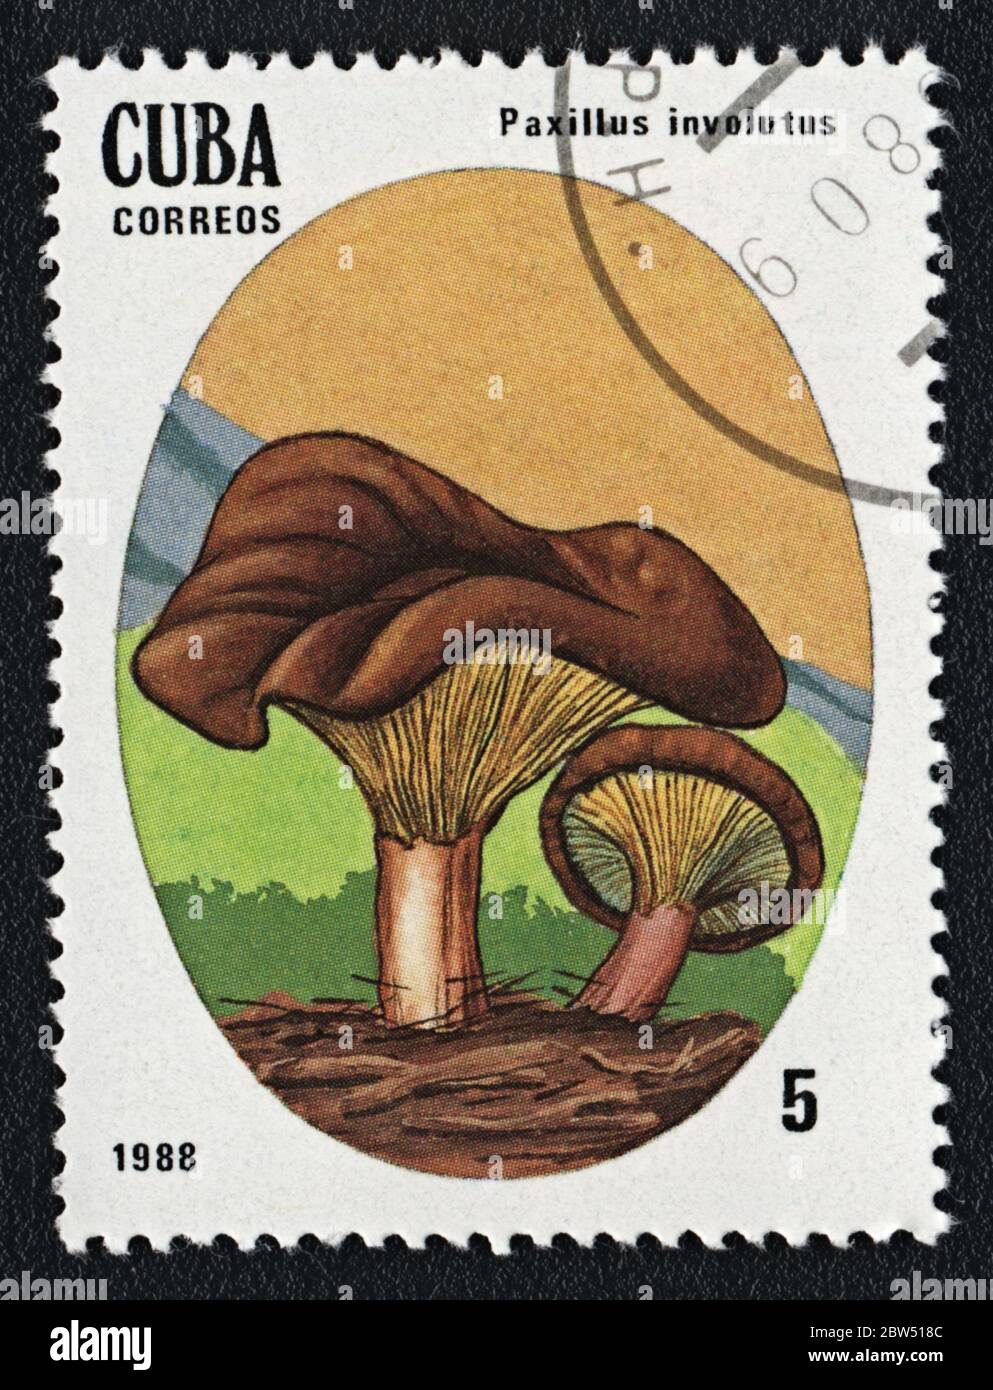 Paxillus involución hongo venenoso. Serie: Hongos incomestibles y venenosos. Sello postal Cuba 1988 Foto de stock